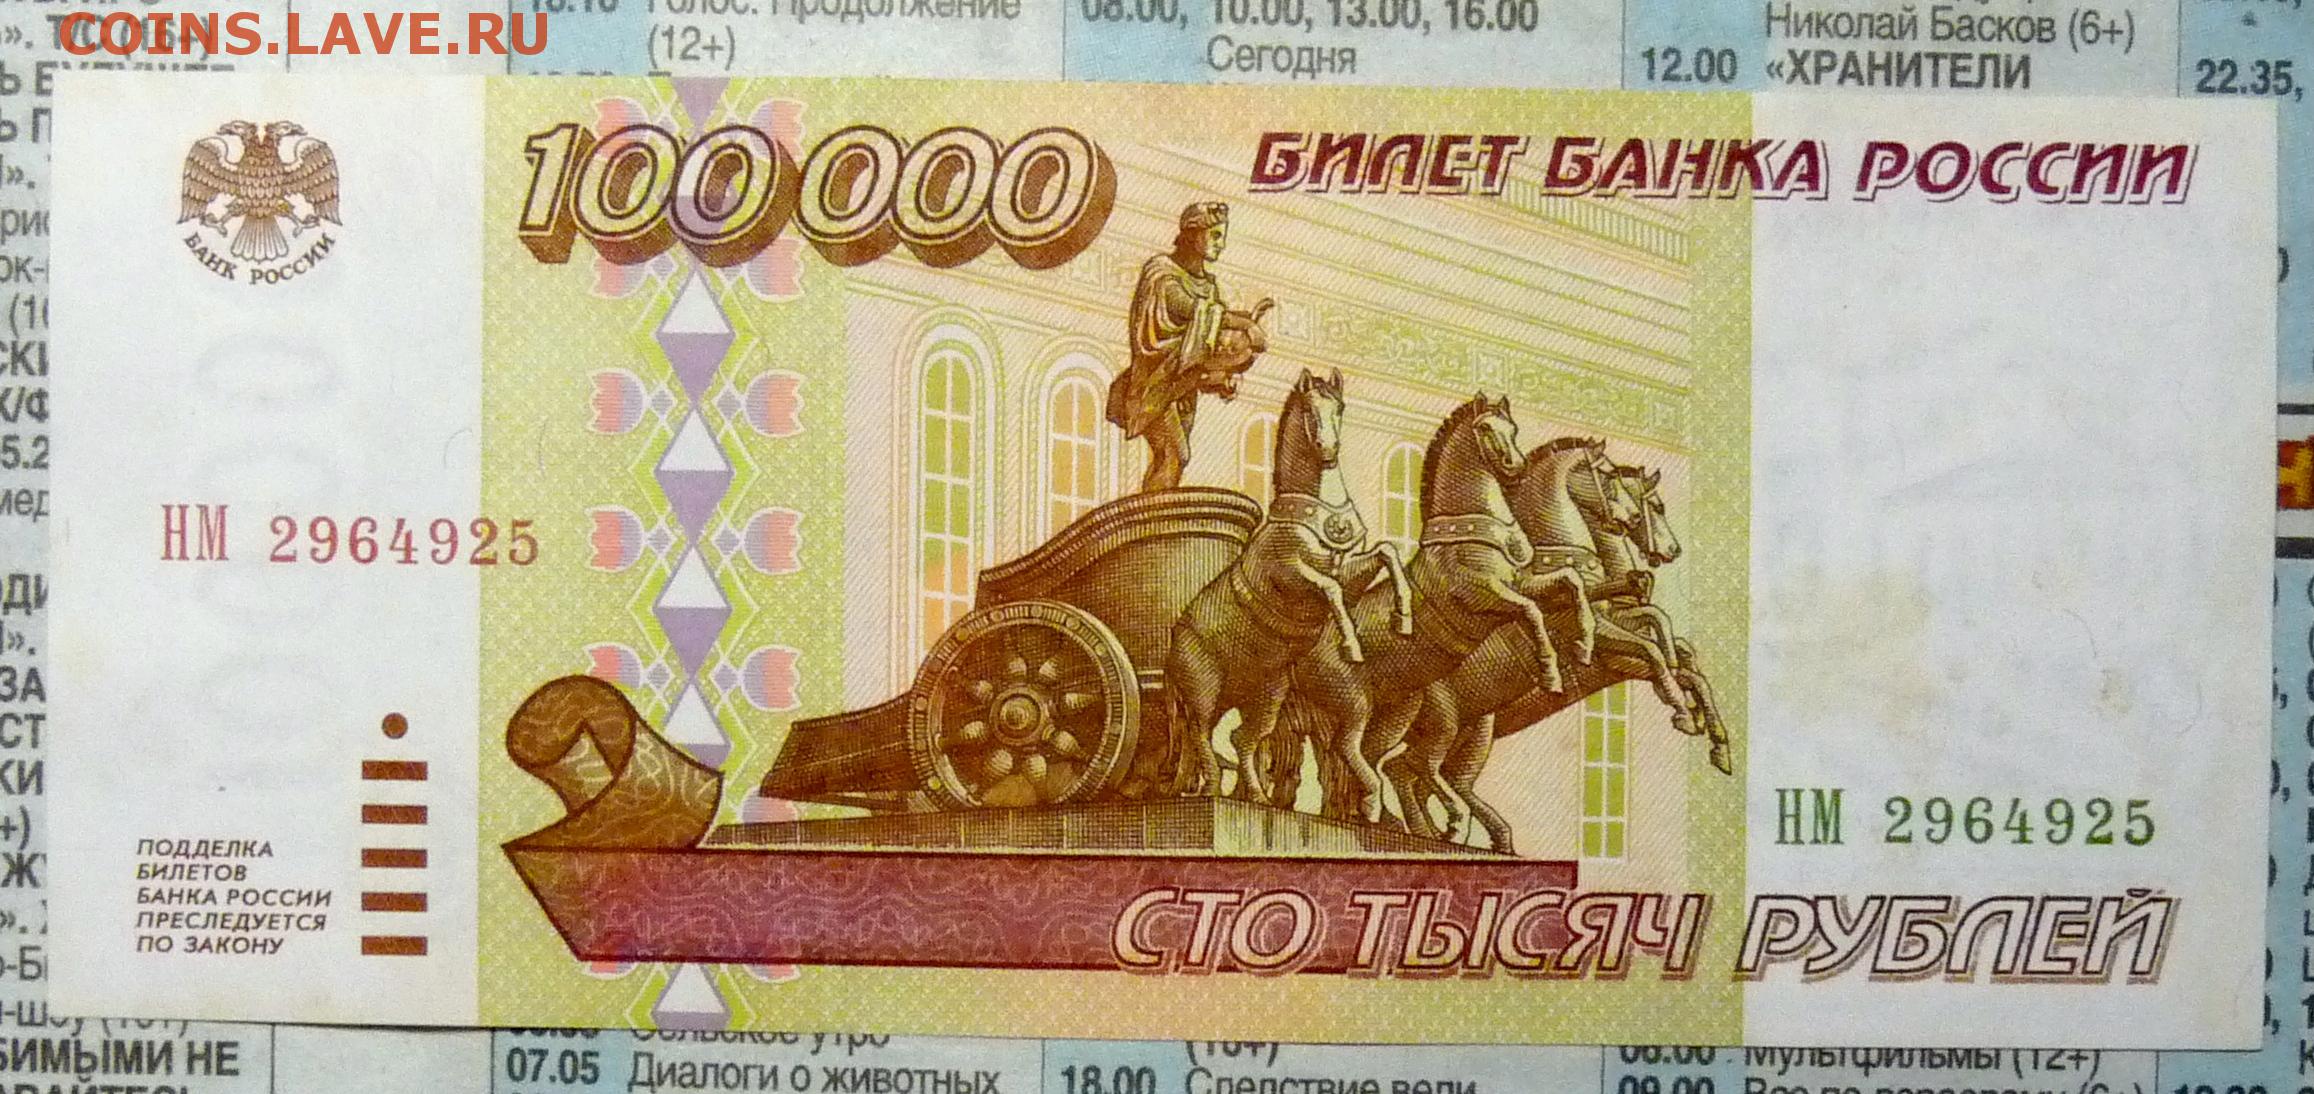 Деньги 100.000. Купюра 100 тысяч рублей 1995 года. Банкнота 100 тысяч рублей. Банкнота 100 рублей. СТО тысяч рублей банкнота.